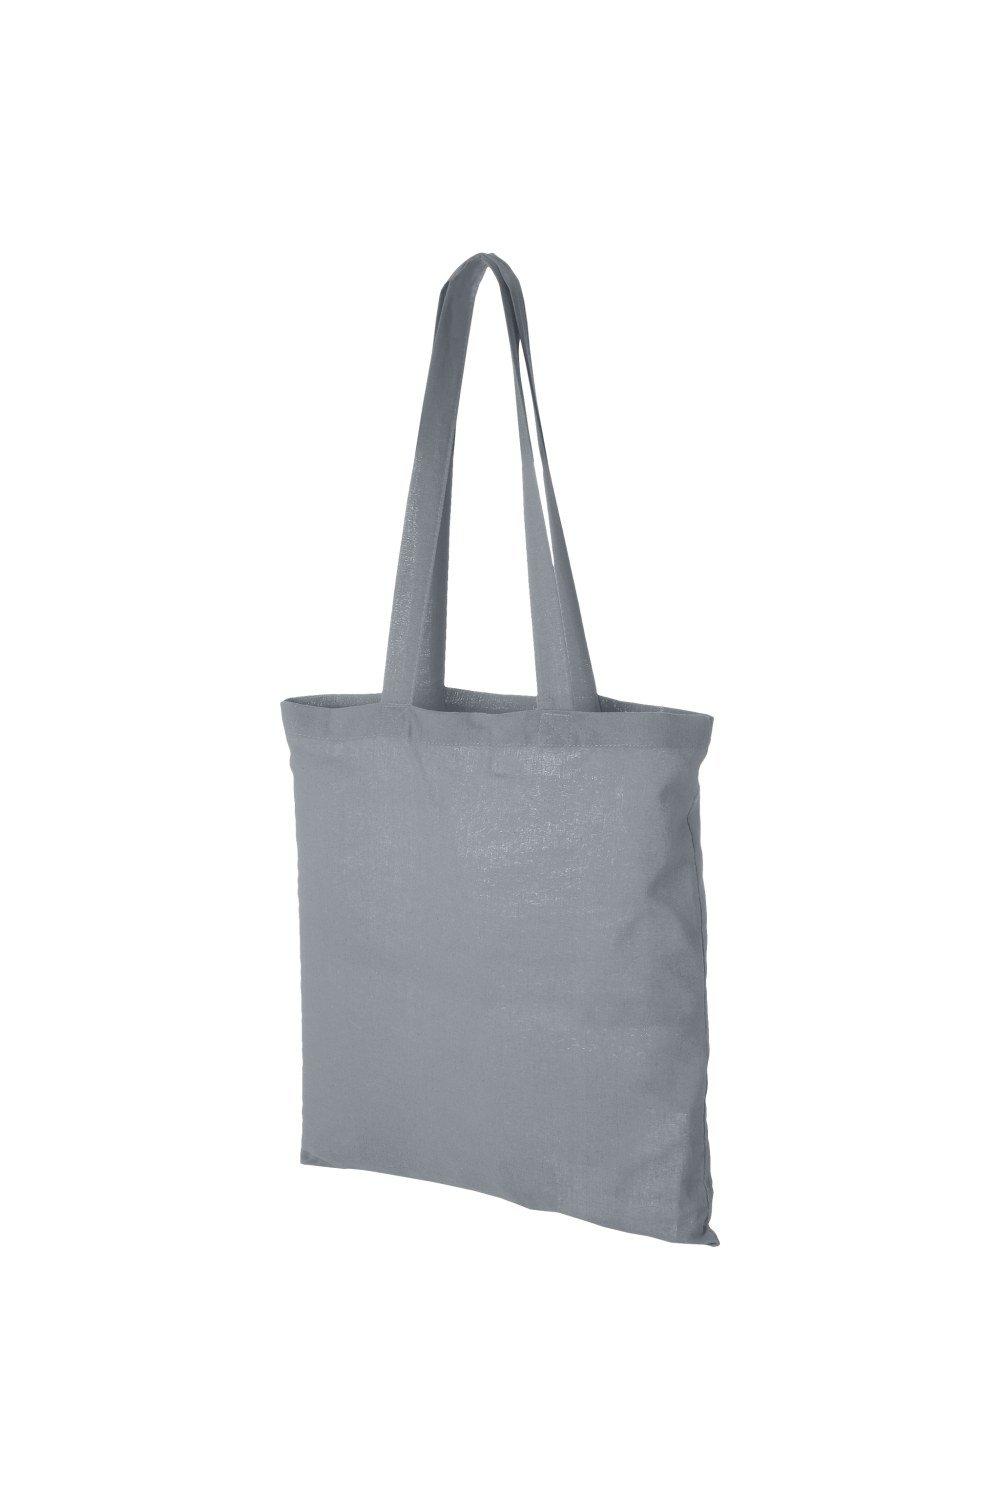 Хлопковая сумка-тоут Carolina Bullet, серый мешочек сумка подарочный винового года каролина